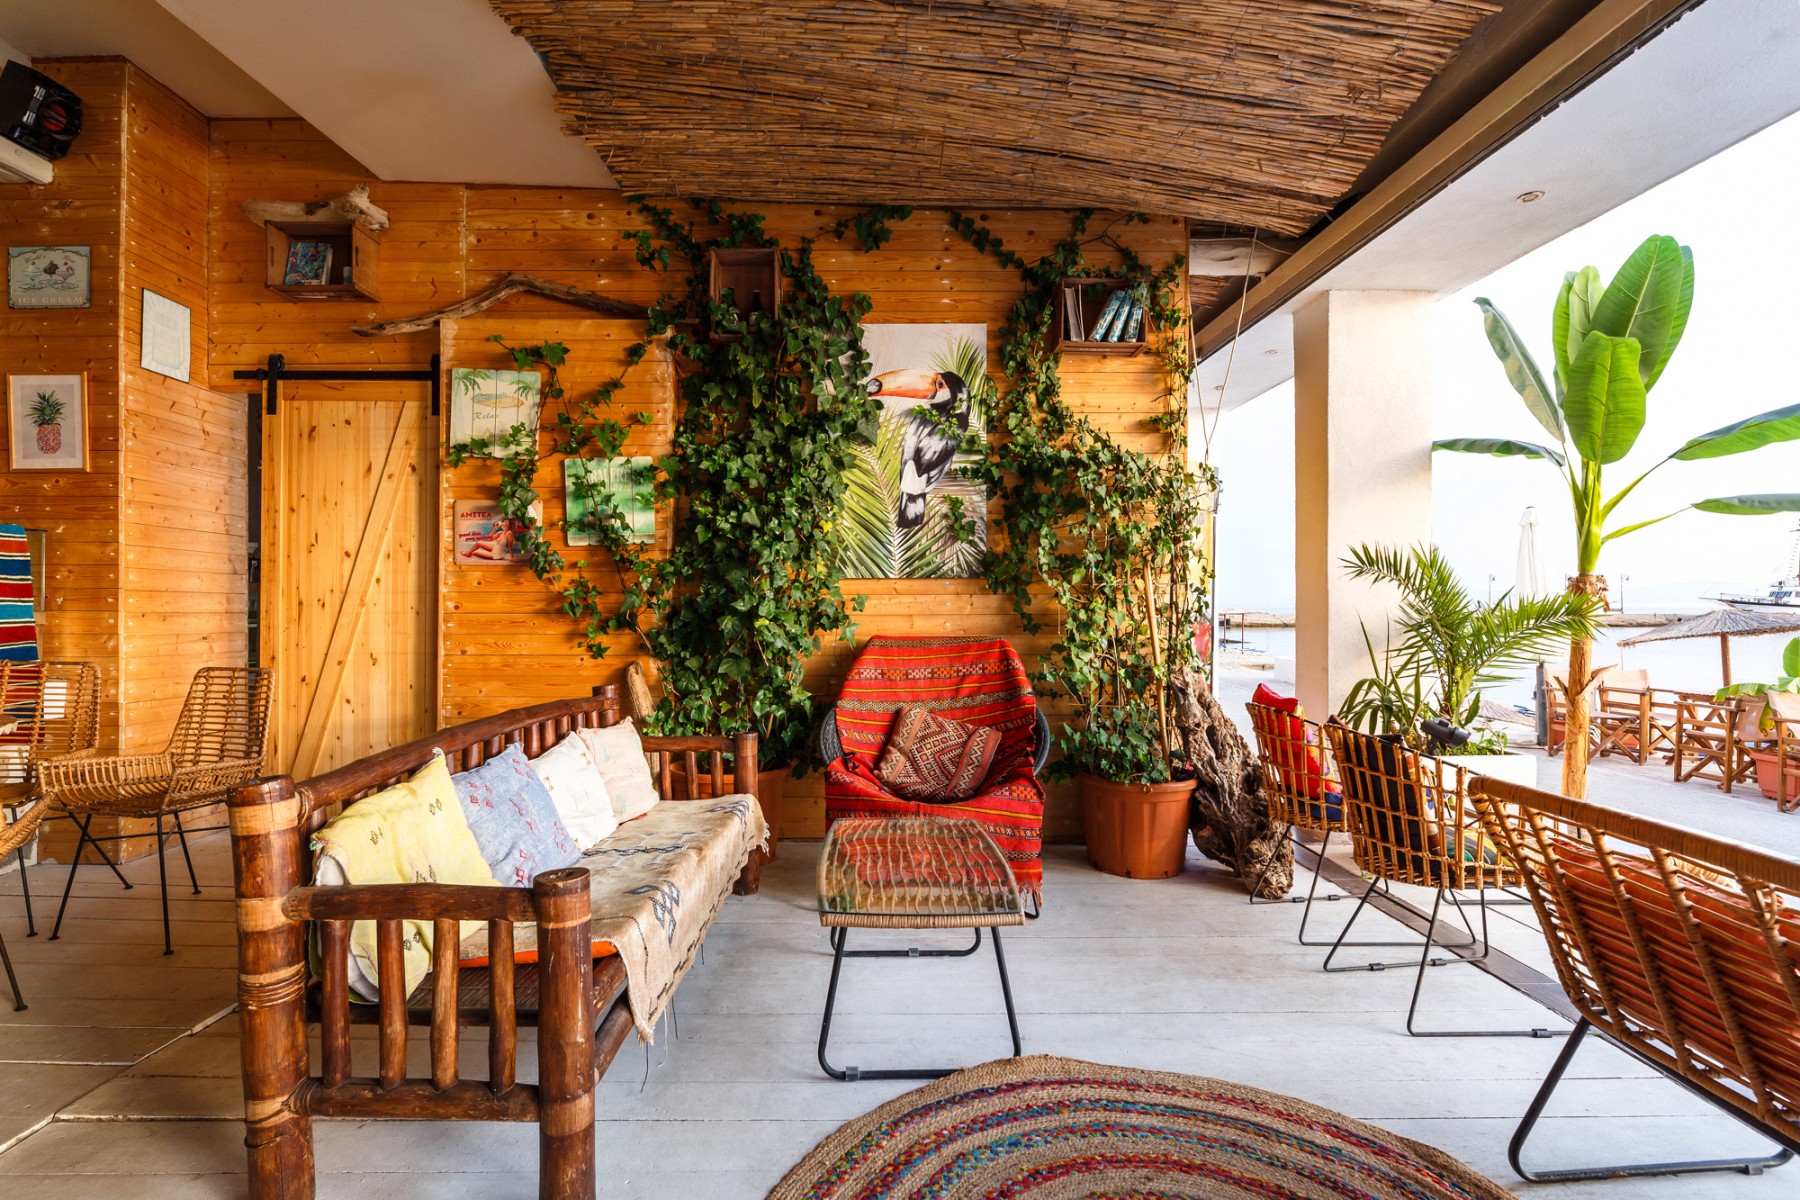 Φωτογράφιση Airbnb στη Χαλκιδική | Marabou Χαλκιδική